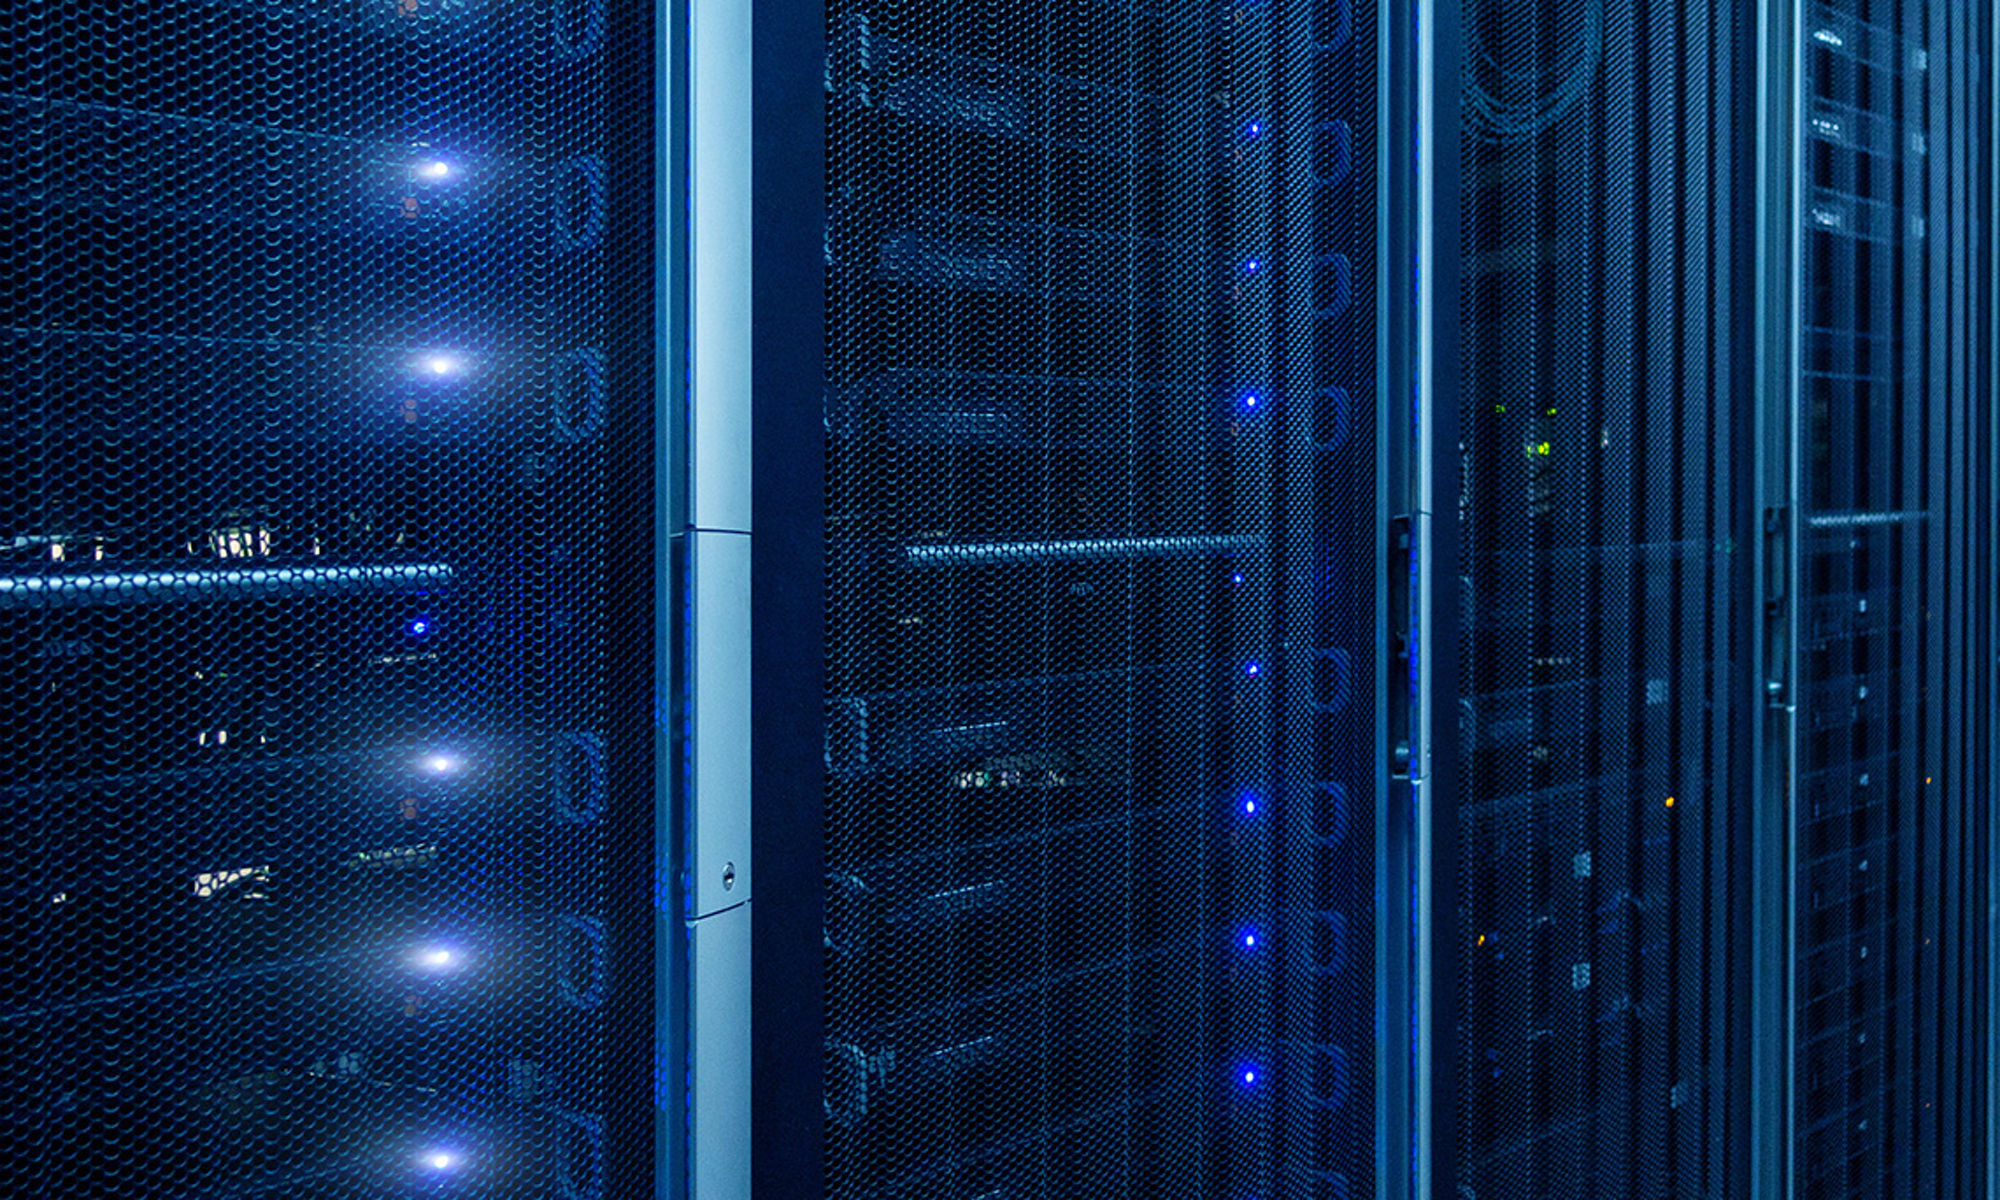 Zoomed in view of server racks in deep blue hues